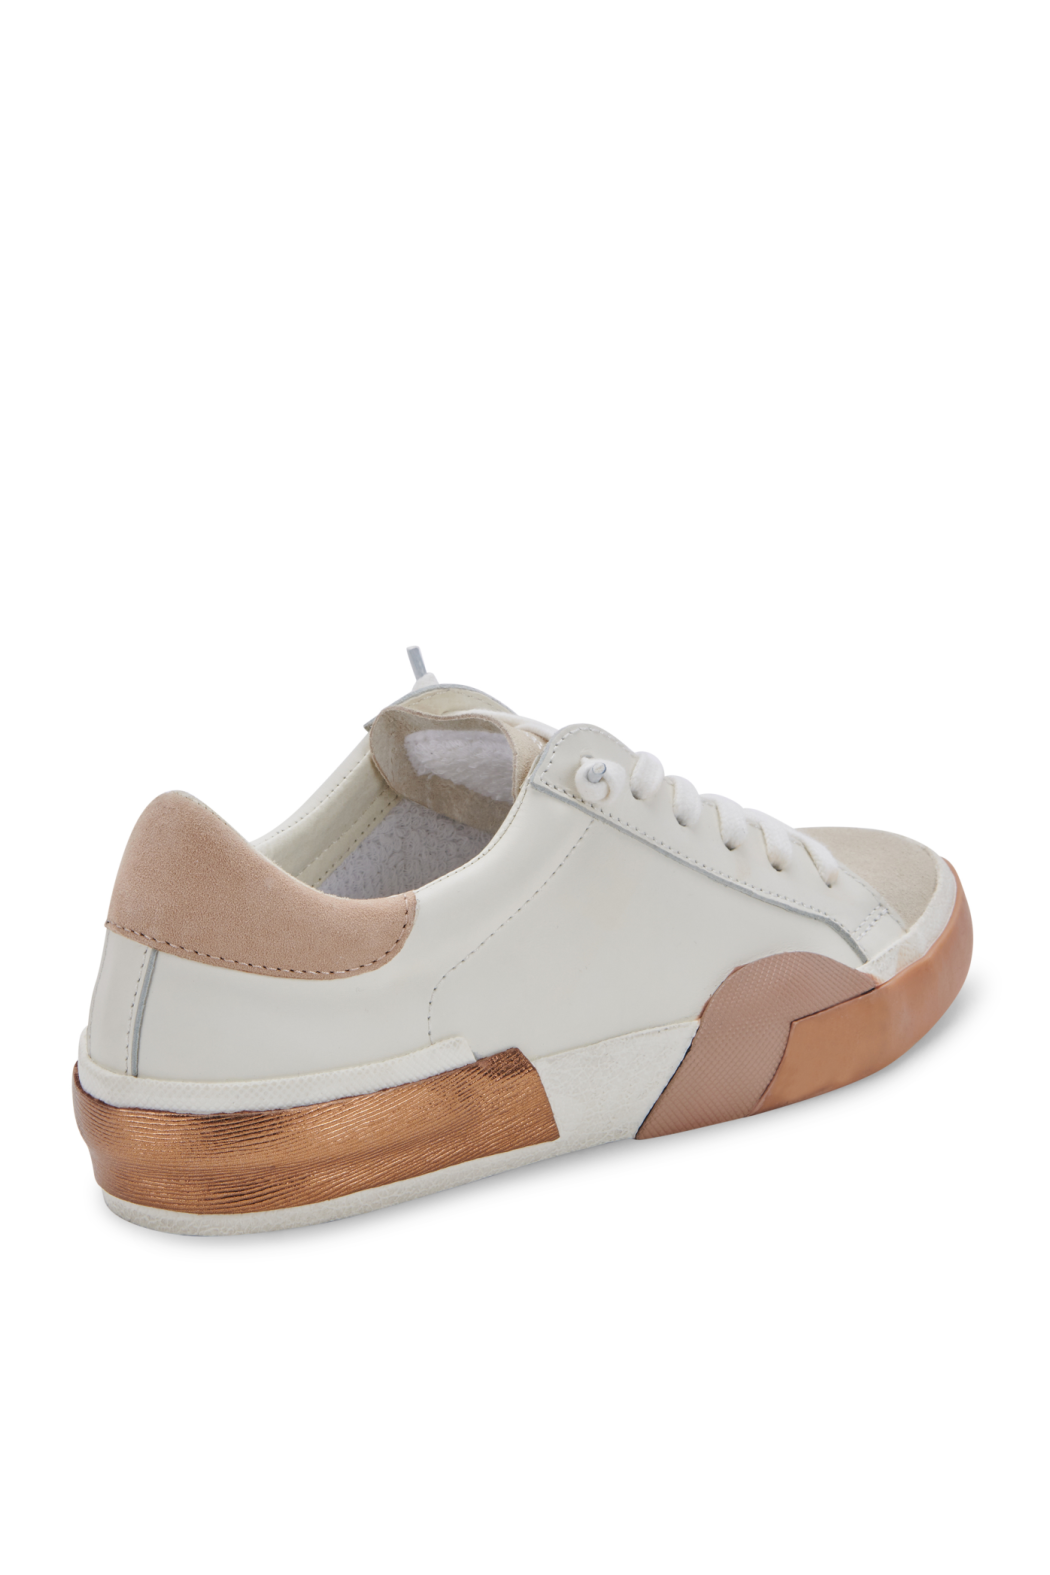 Zina Tan/White Sneakers